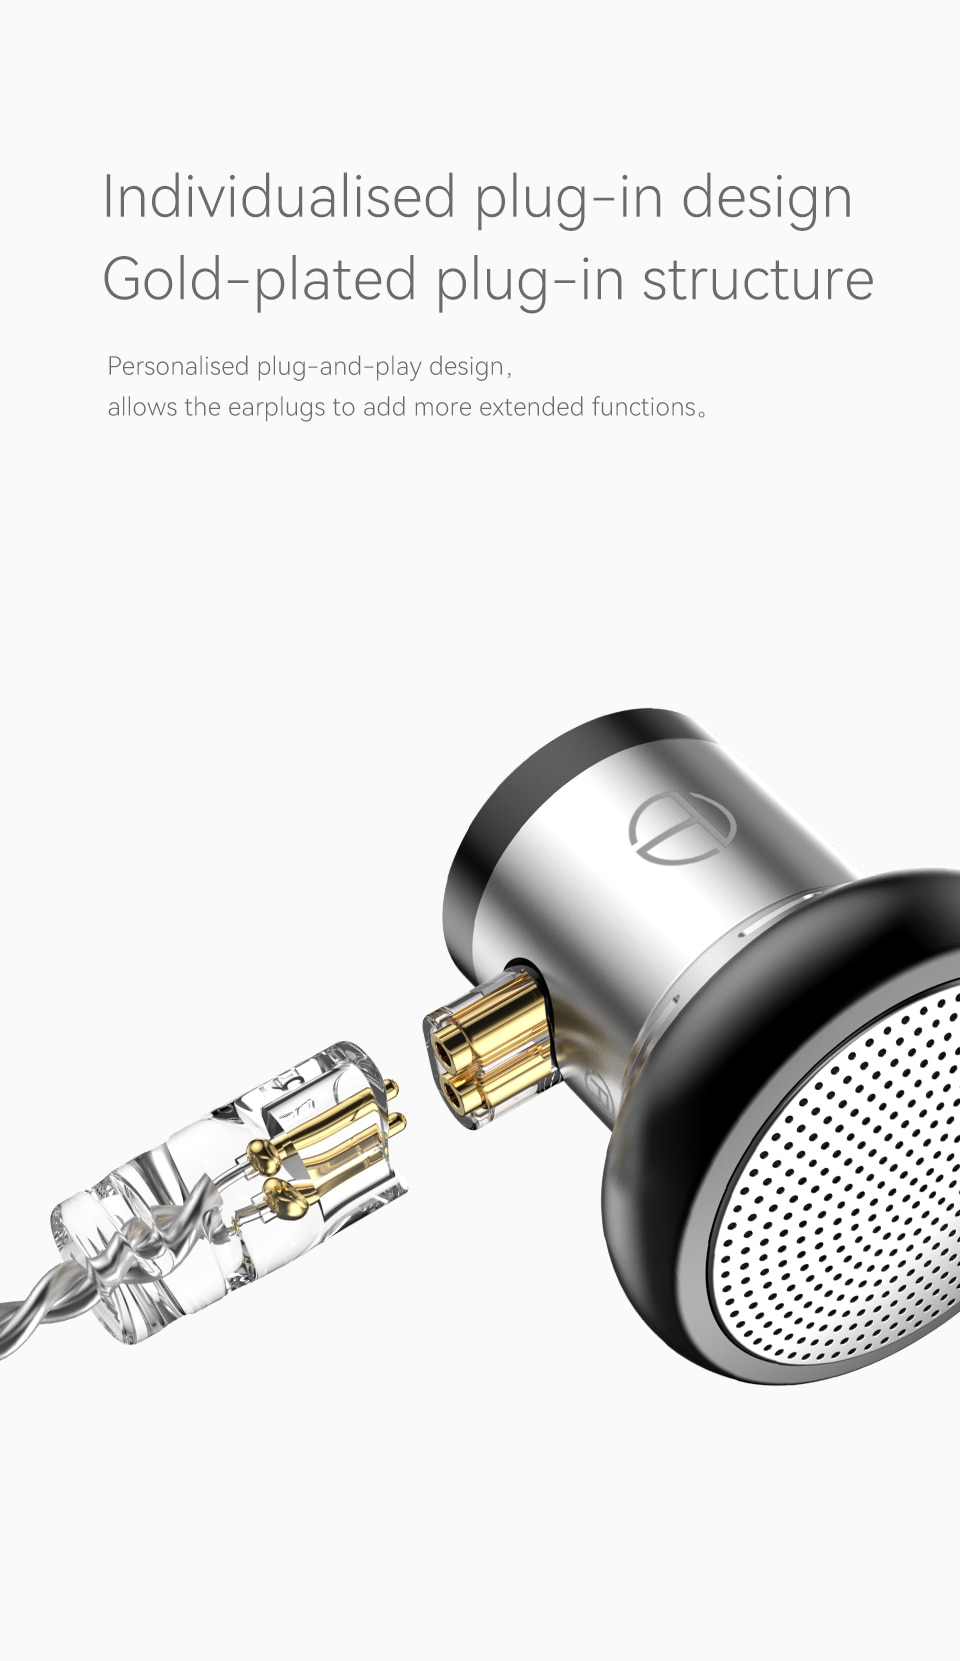 [NC] Tai nghe TRN EMA Earbud Có Mic Hifi In Ear | 14.2mm PET Composite Diaphragm Driver |  Chuyên Nghe Tạp | Hàng Chính Hãng